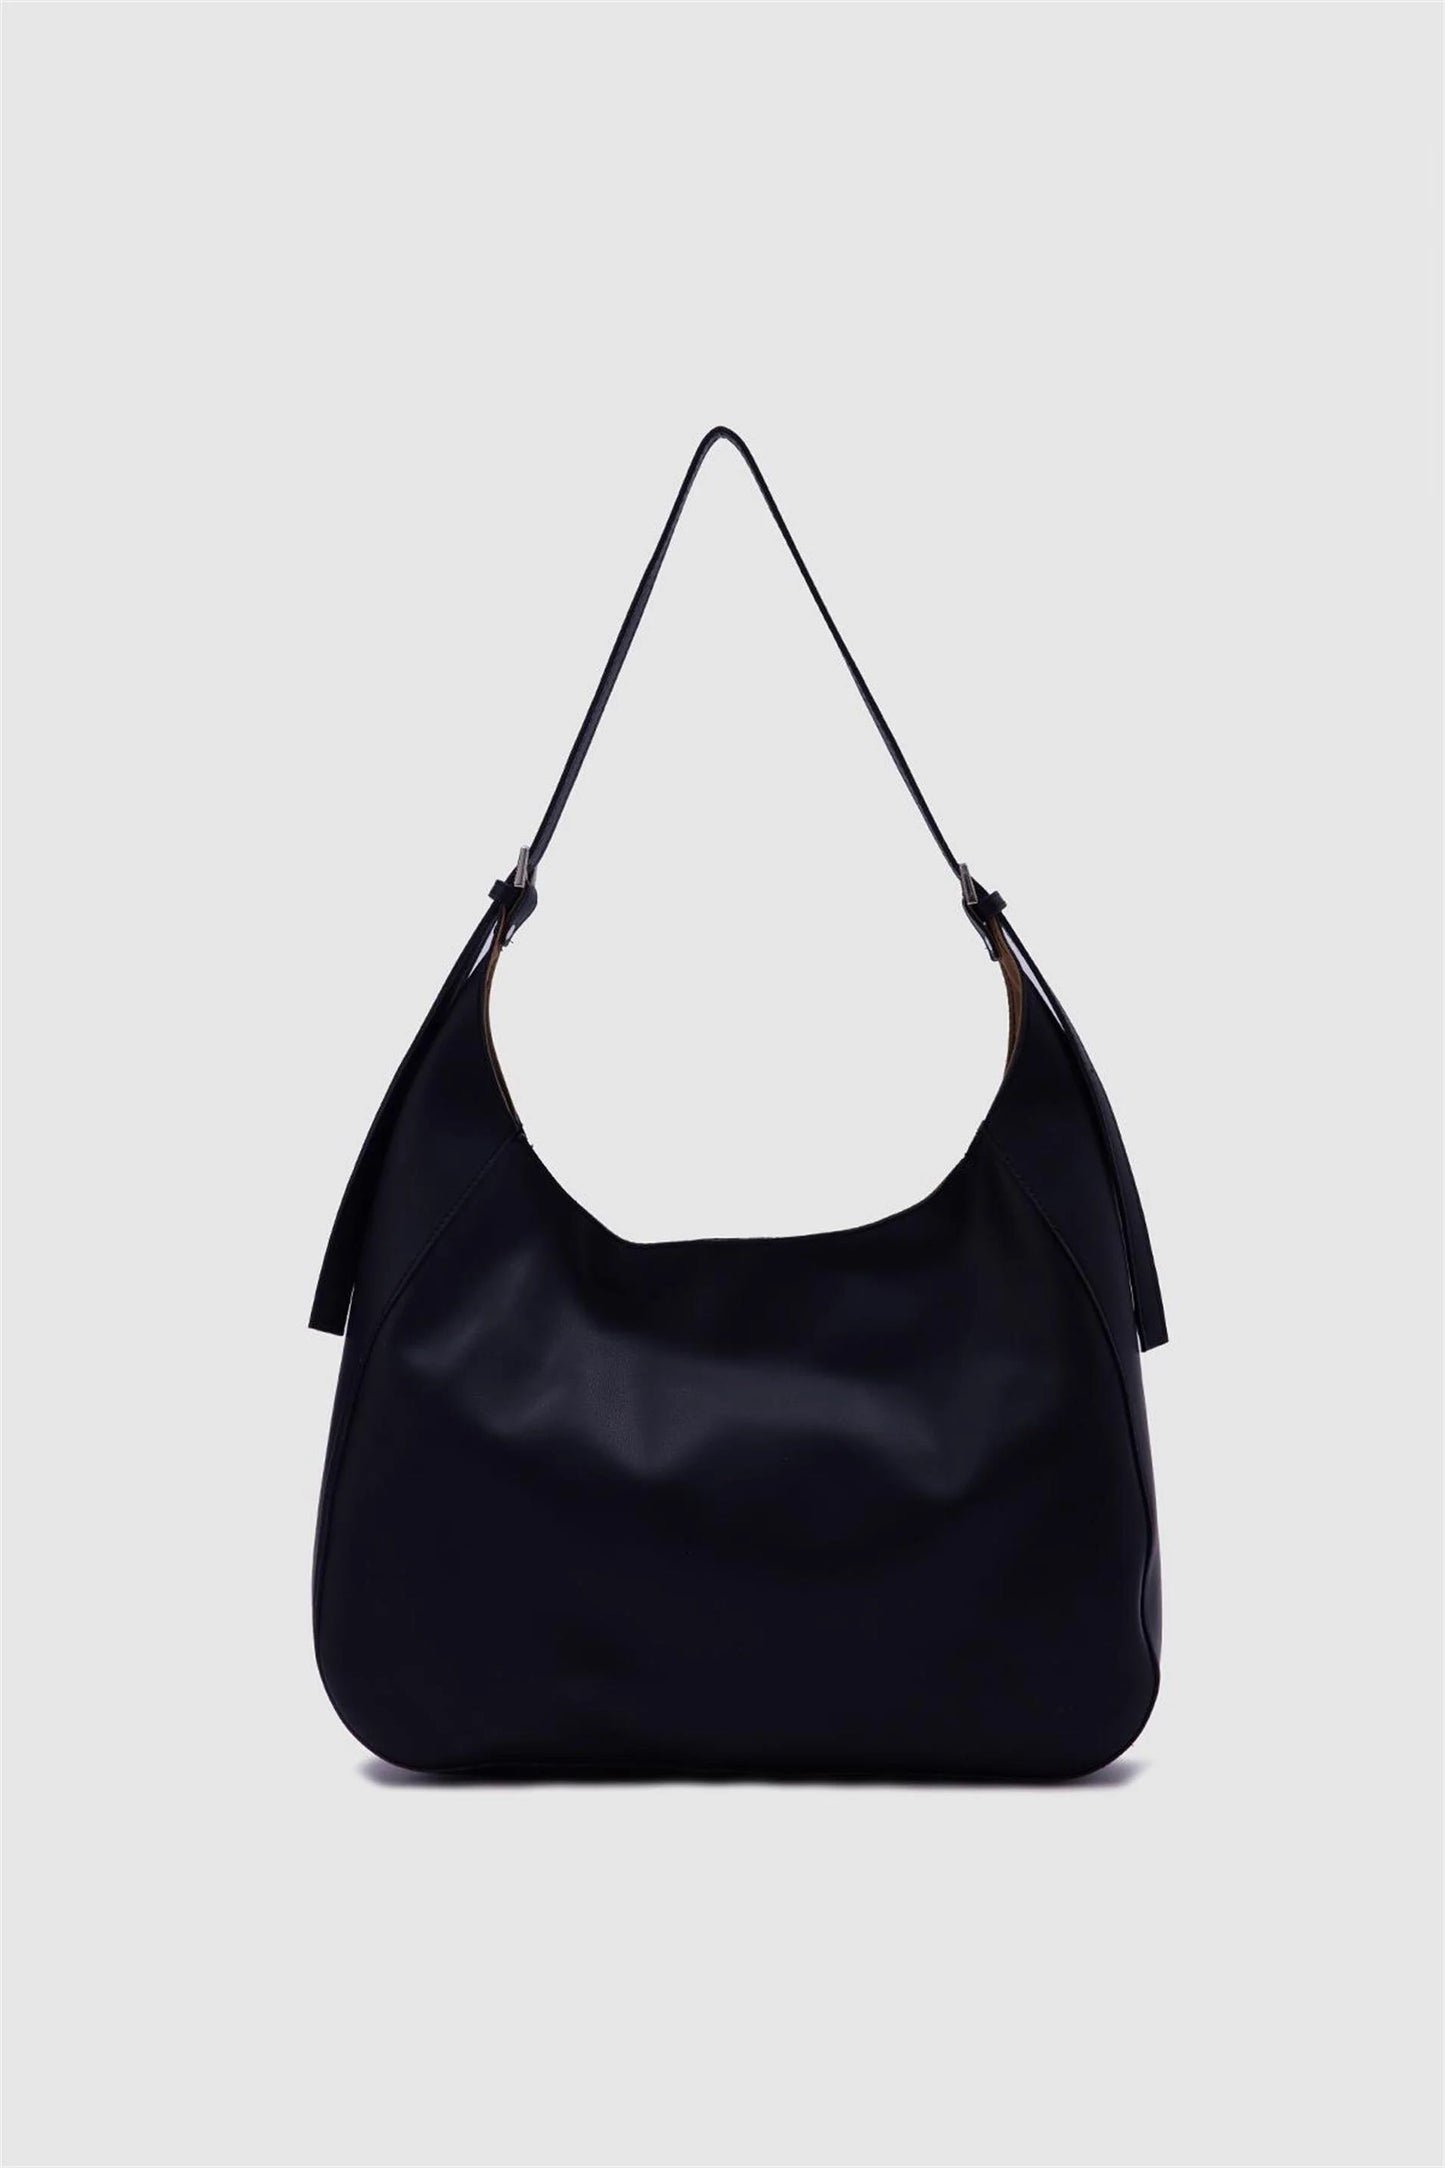 Faux Leather Mink Bigger Shoulder Bag shoulder bag LUNARITY GARAGE Black  